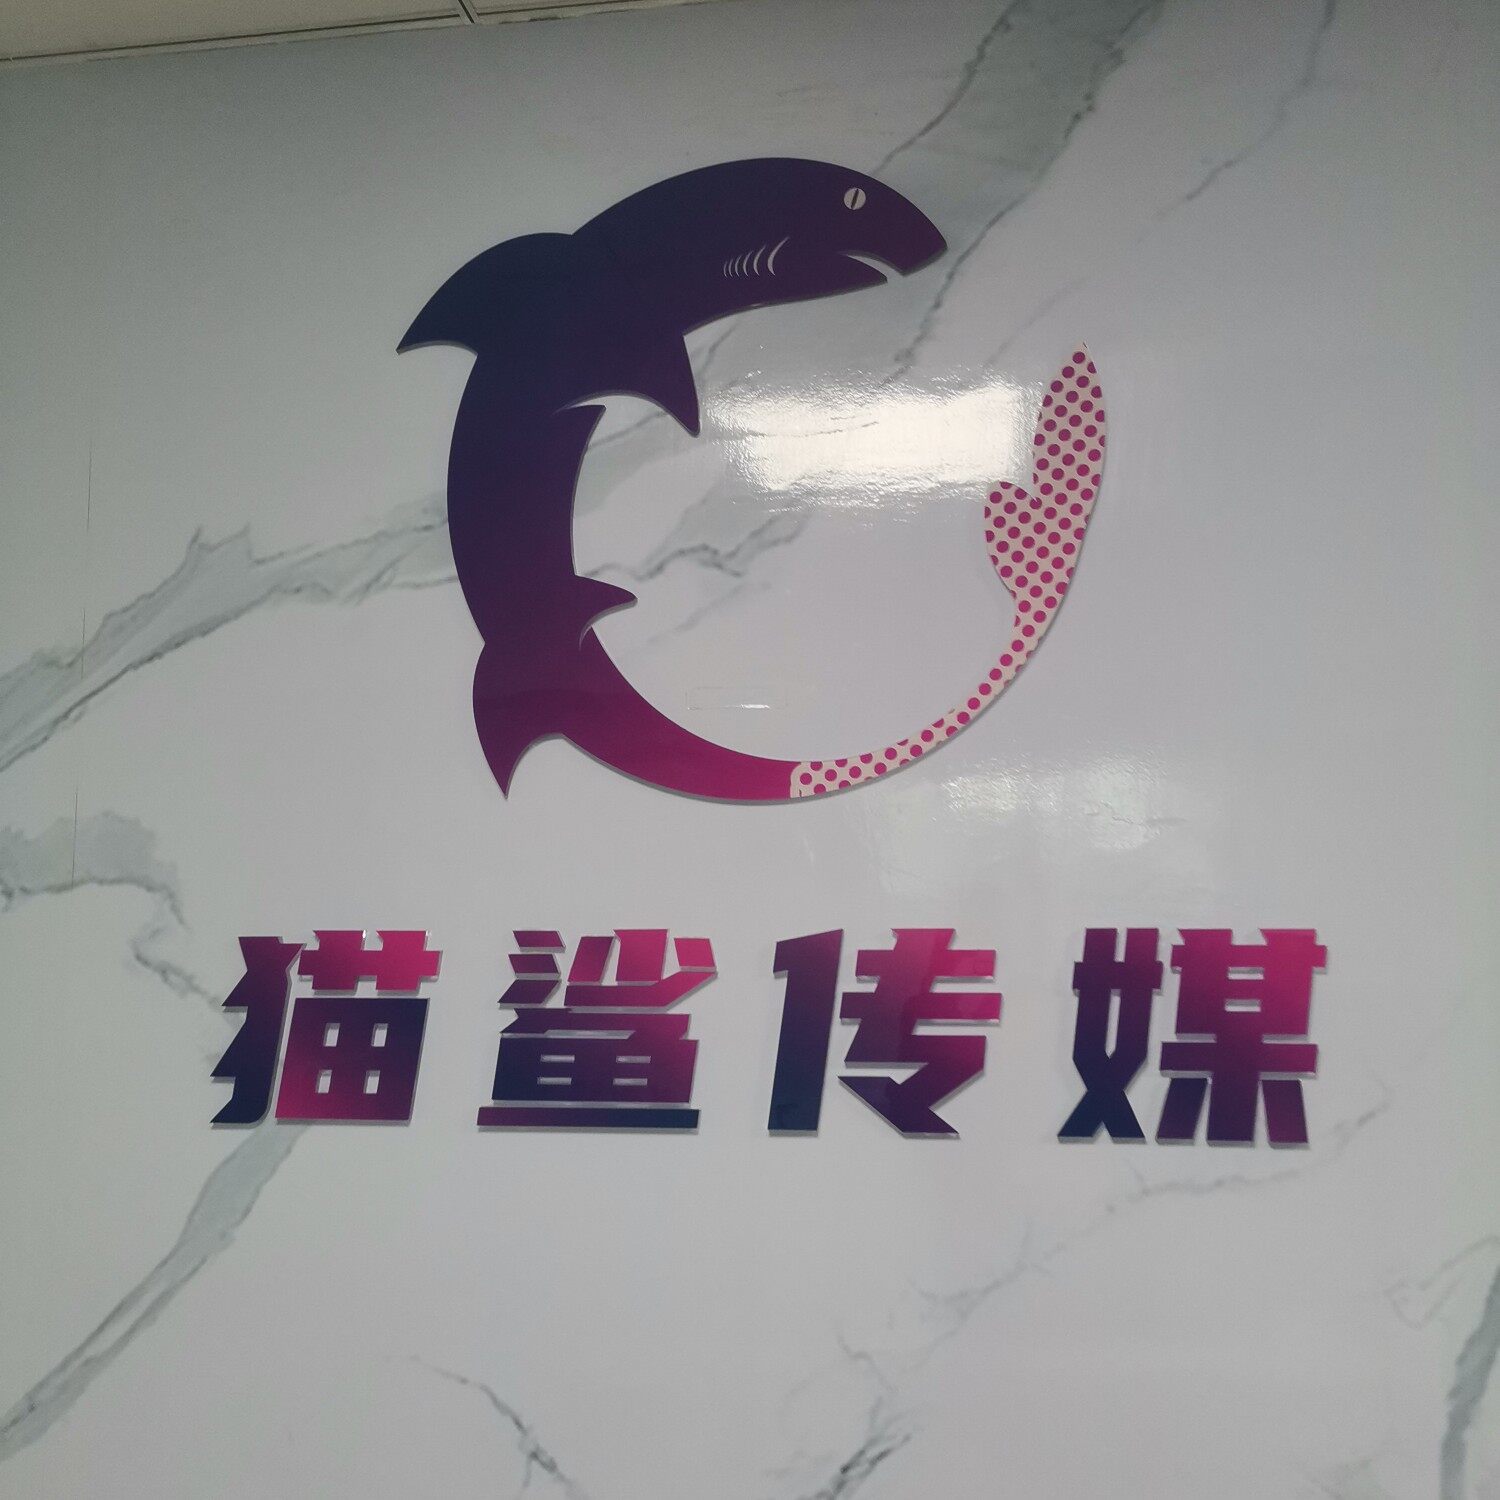 东莞市猫鲨文化传媒有限公司logo